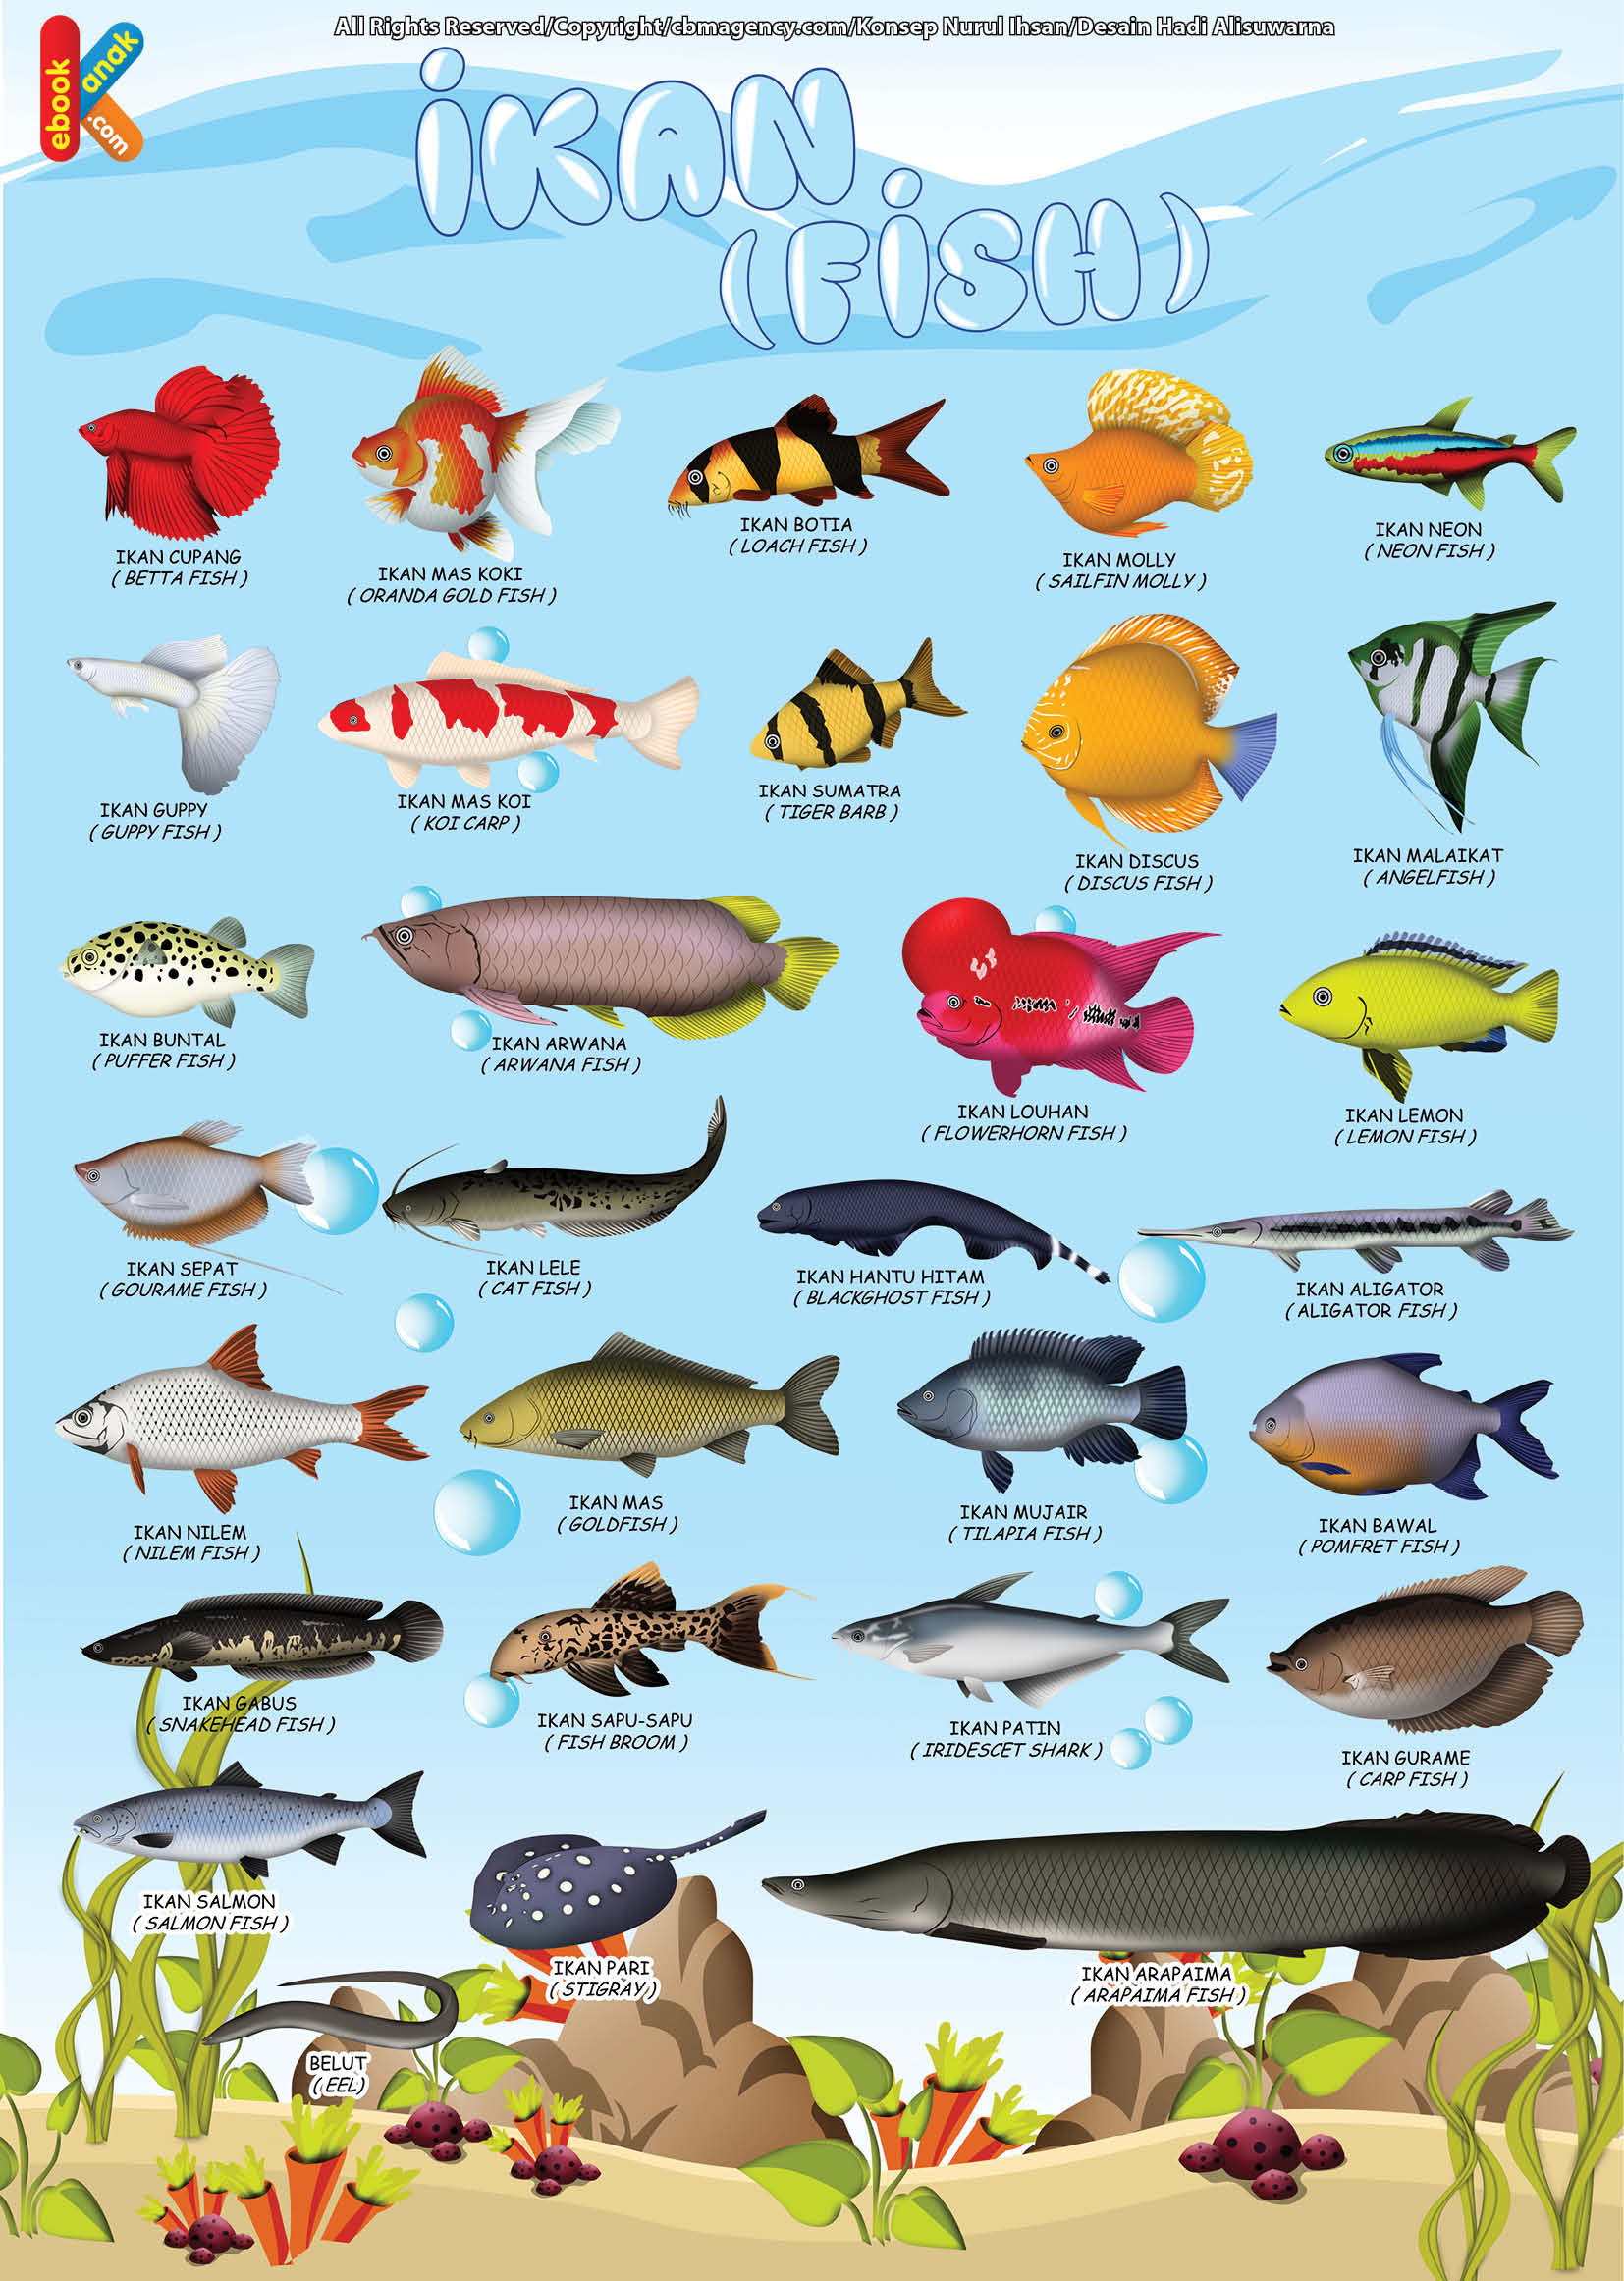 Download Gratis Dengan mengklik tombol merah bertuliskan “CLICK HERE TO DOWNLOAD” Seri Poster Pendidikan Judul Poster Pendidikan Belajar Mengenal Ikan